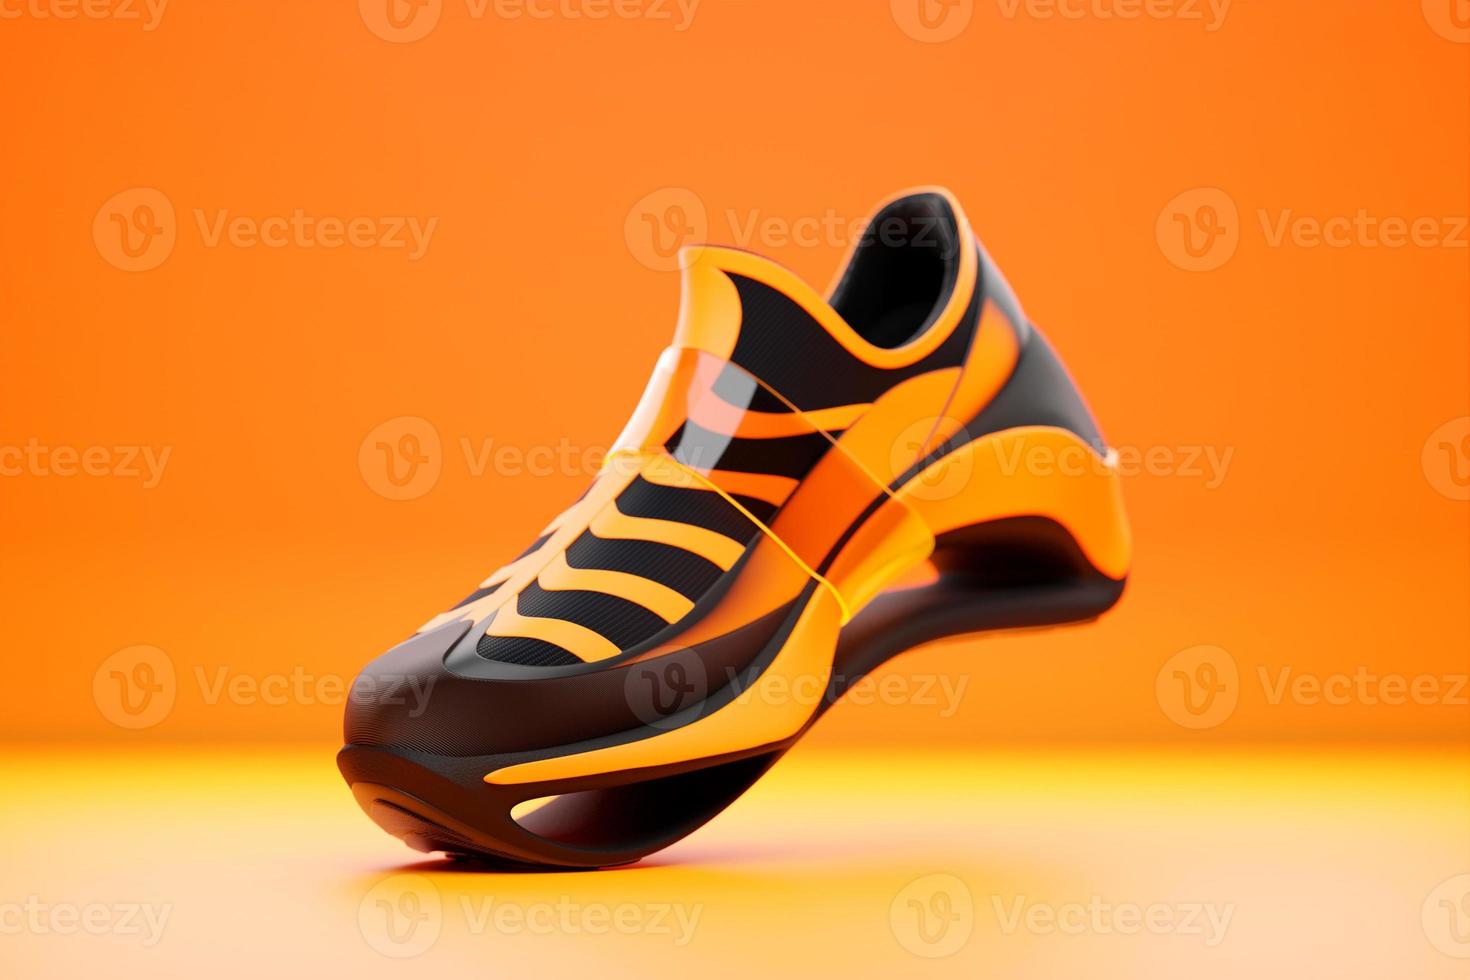 tênis preto e laranja com estampa animal print na sola. o conceito de tênis elegantes brilhantes, renderização em 3d. foto